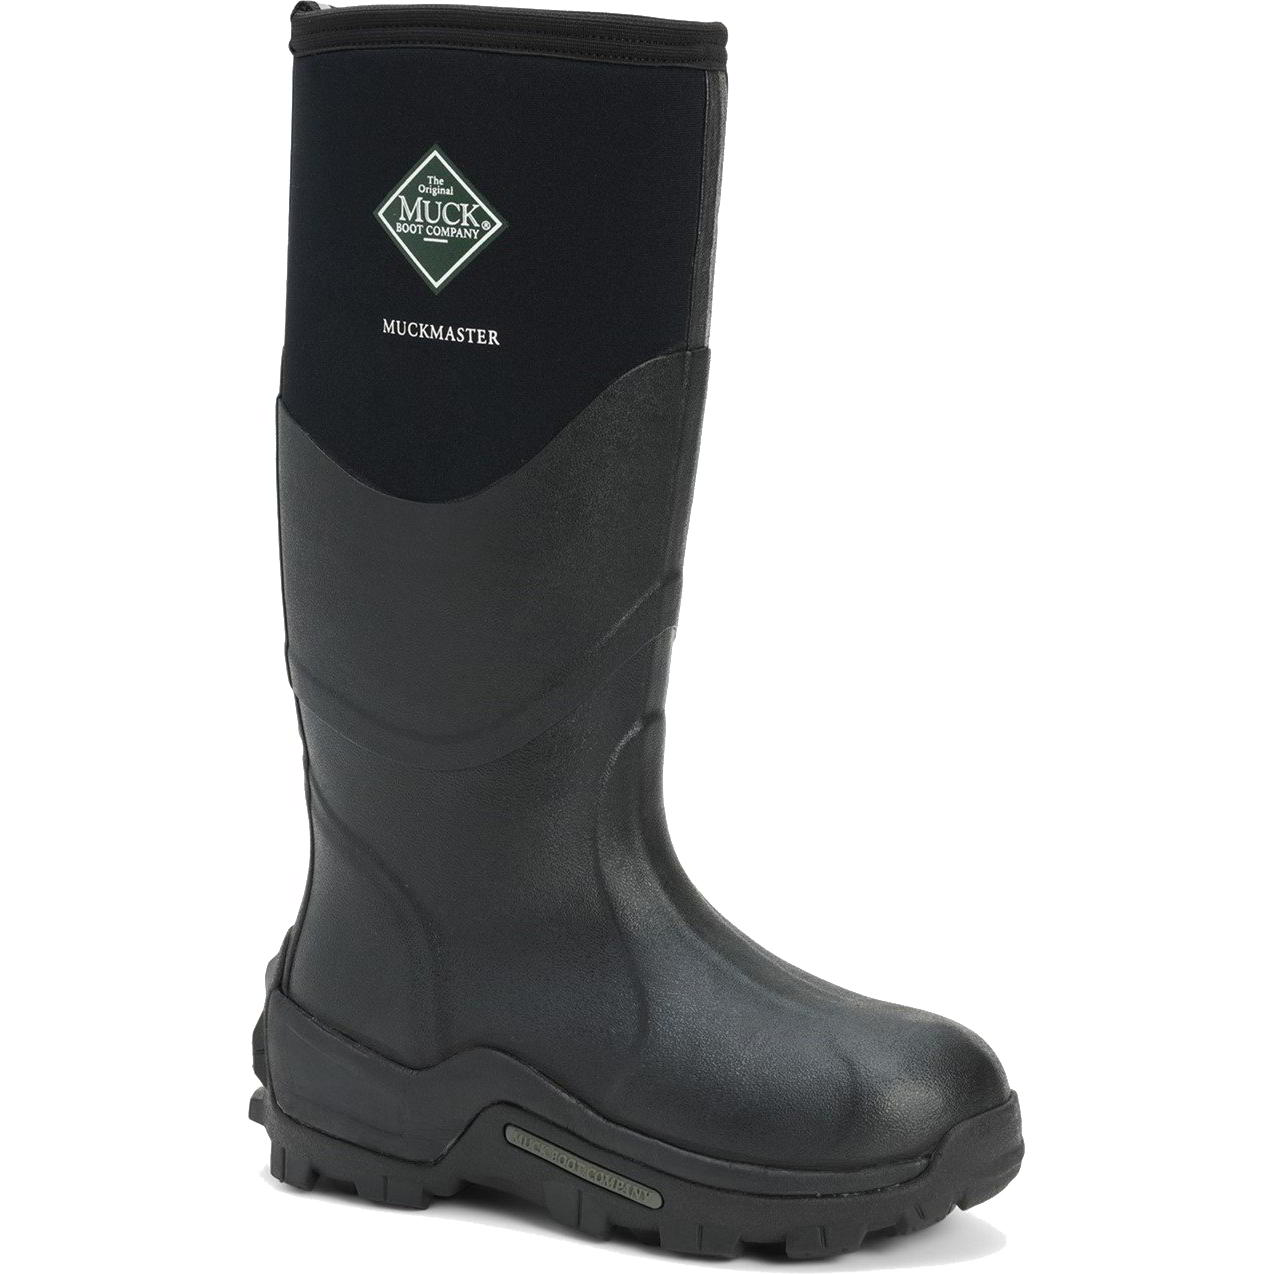 Muck Boots Mens Womens Master Neoprene Wellies Rain - Black 2951